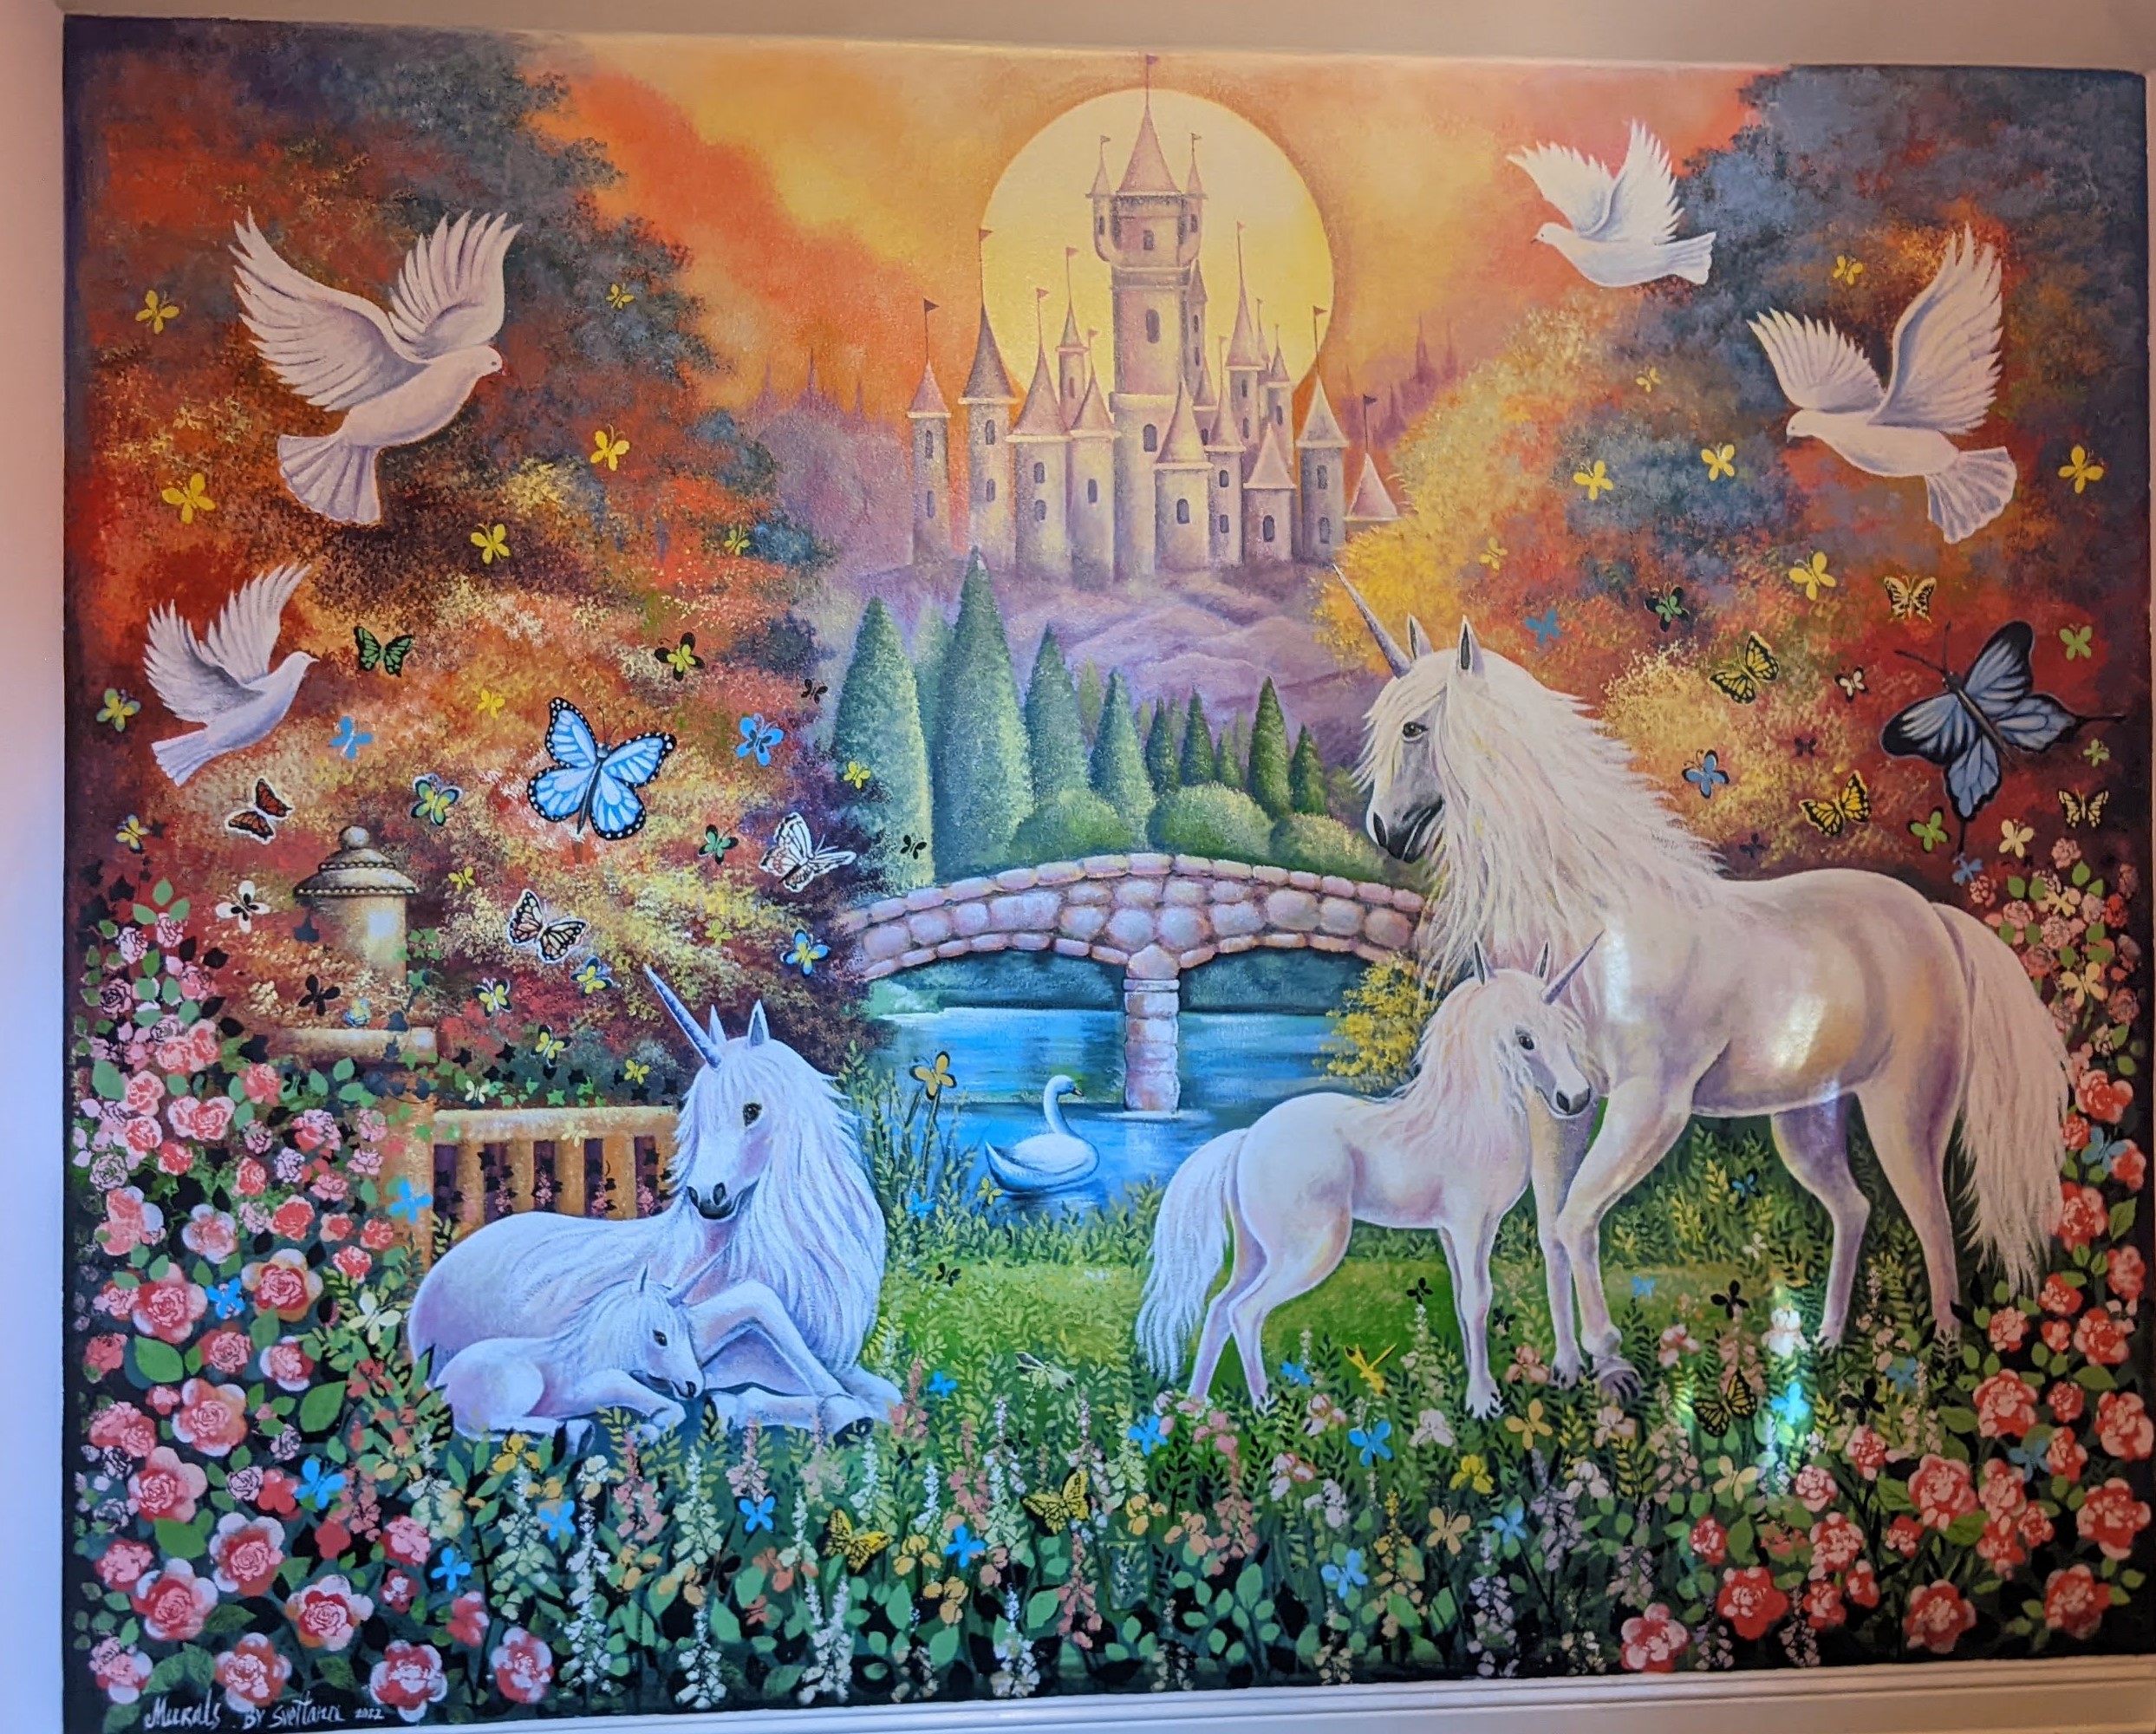 Murals1/unicorn.jpg